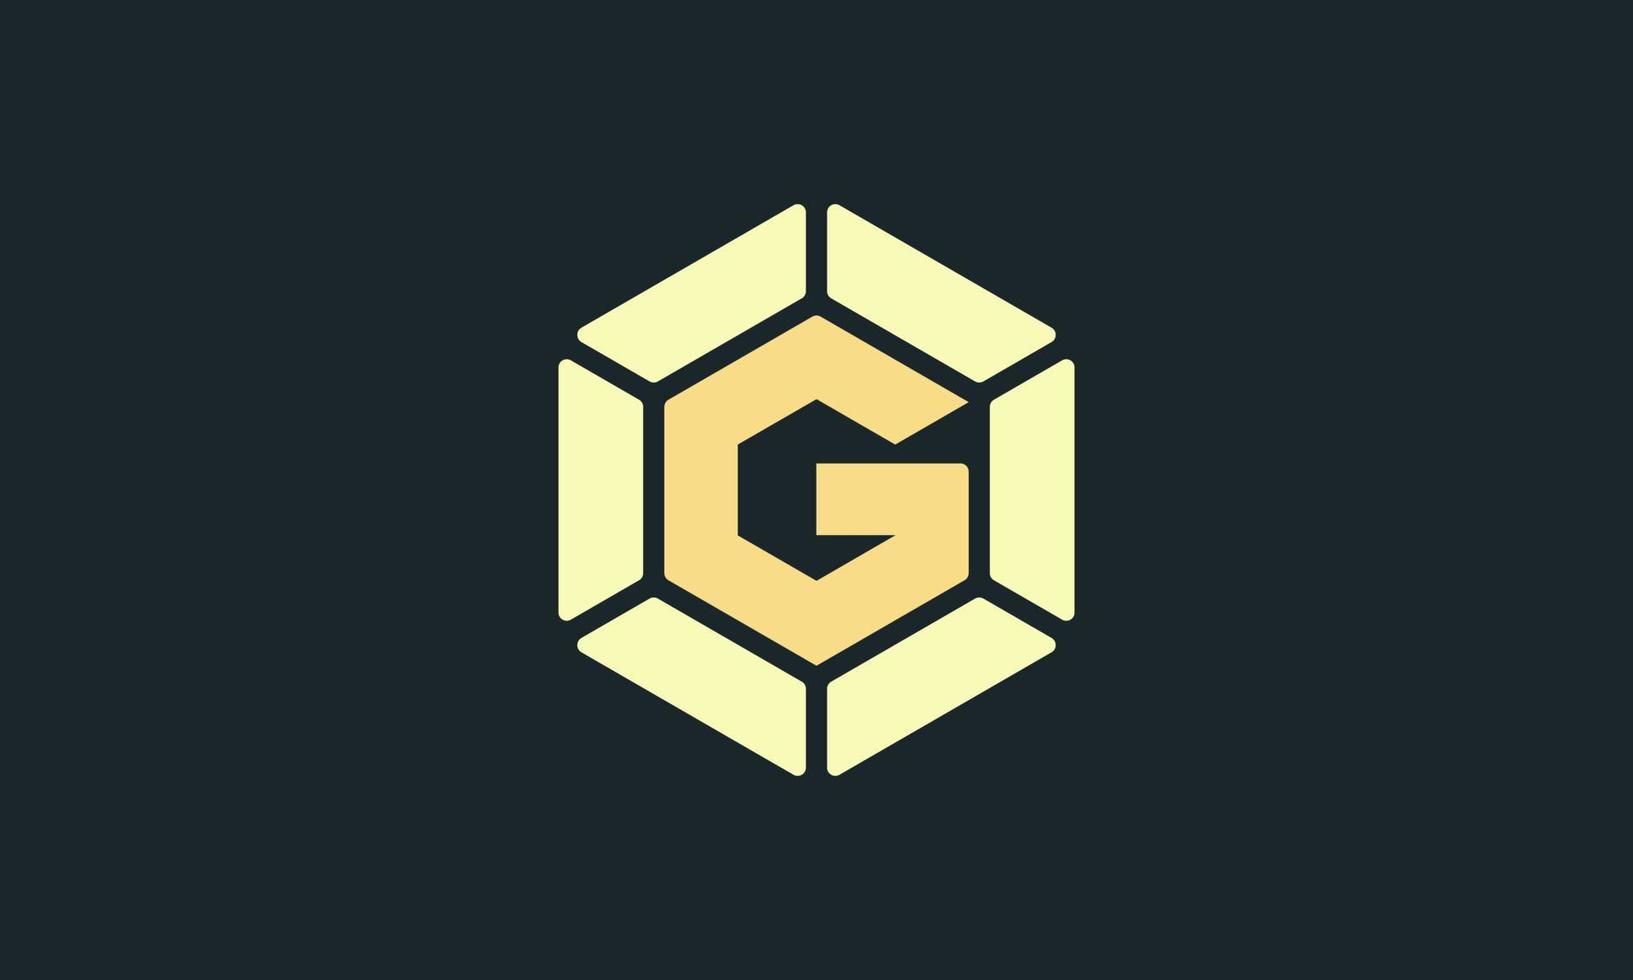 g gem logotipo hexagonal, conceito simples e moderno, símbolo de estilo plano minimalista adequado para todos os tipos de negócios e marcas vetor